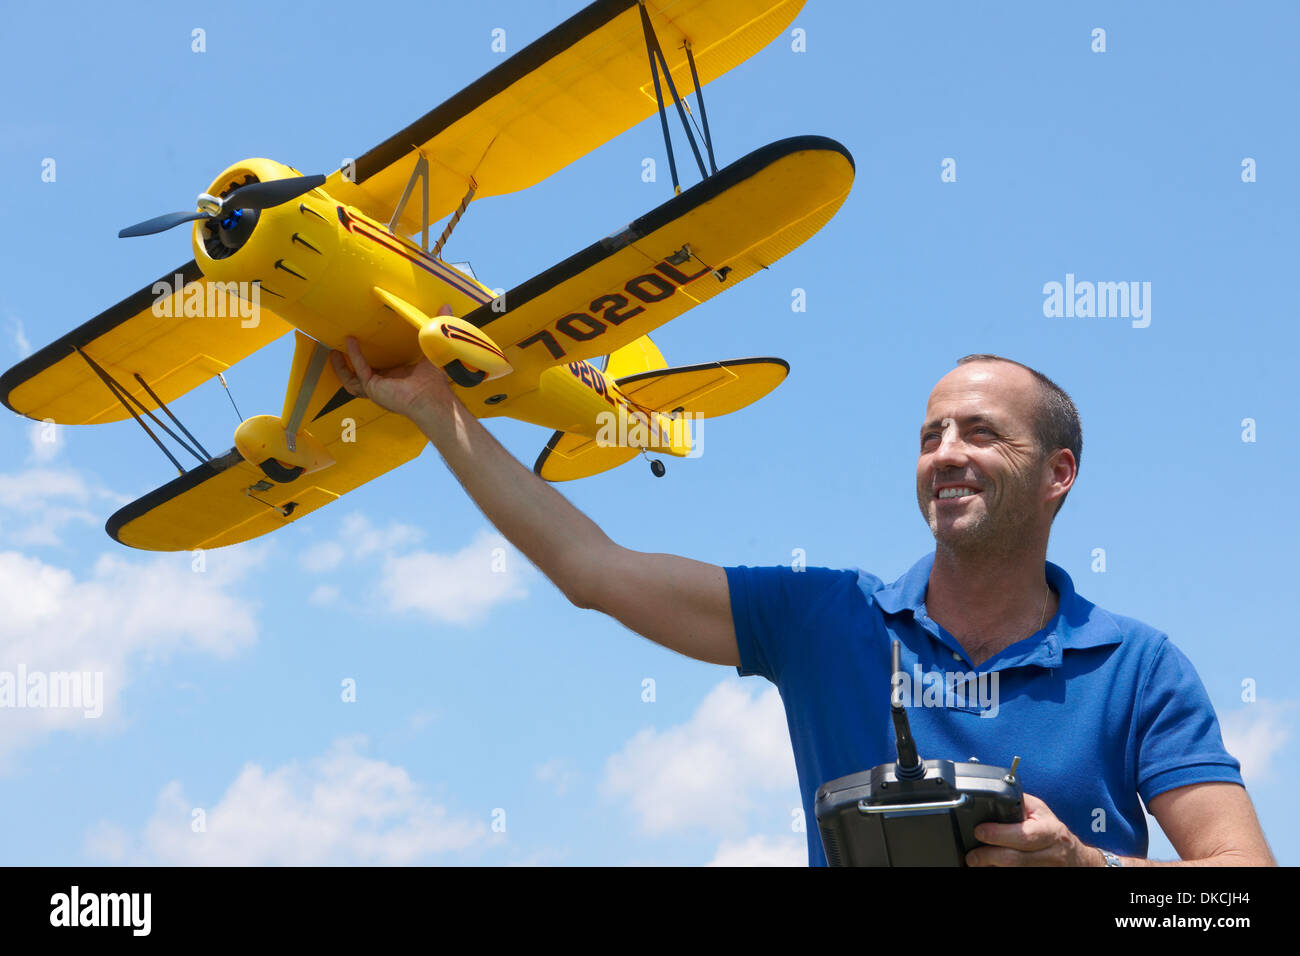 Hombre preparando para lanzar avión modelo Foto de stock